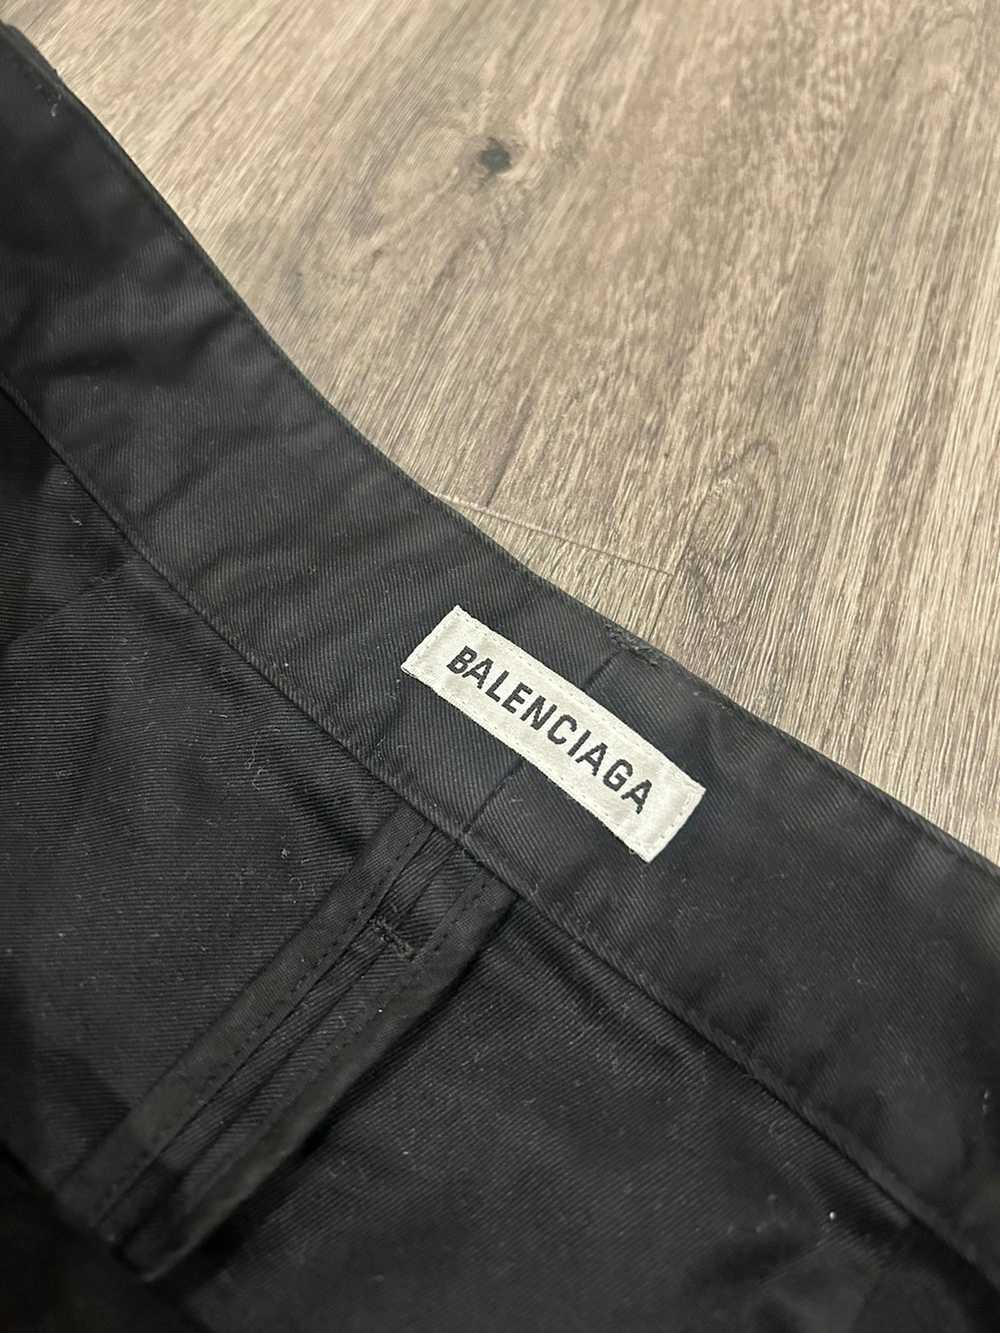 Balenciaga NO PAYPAL s/s 2022 low crotch pants!! - image 6